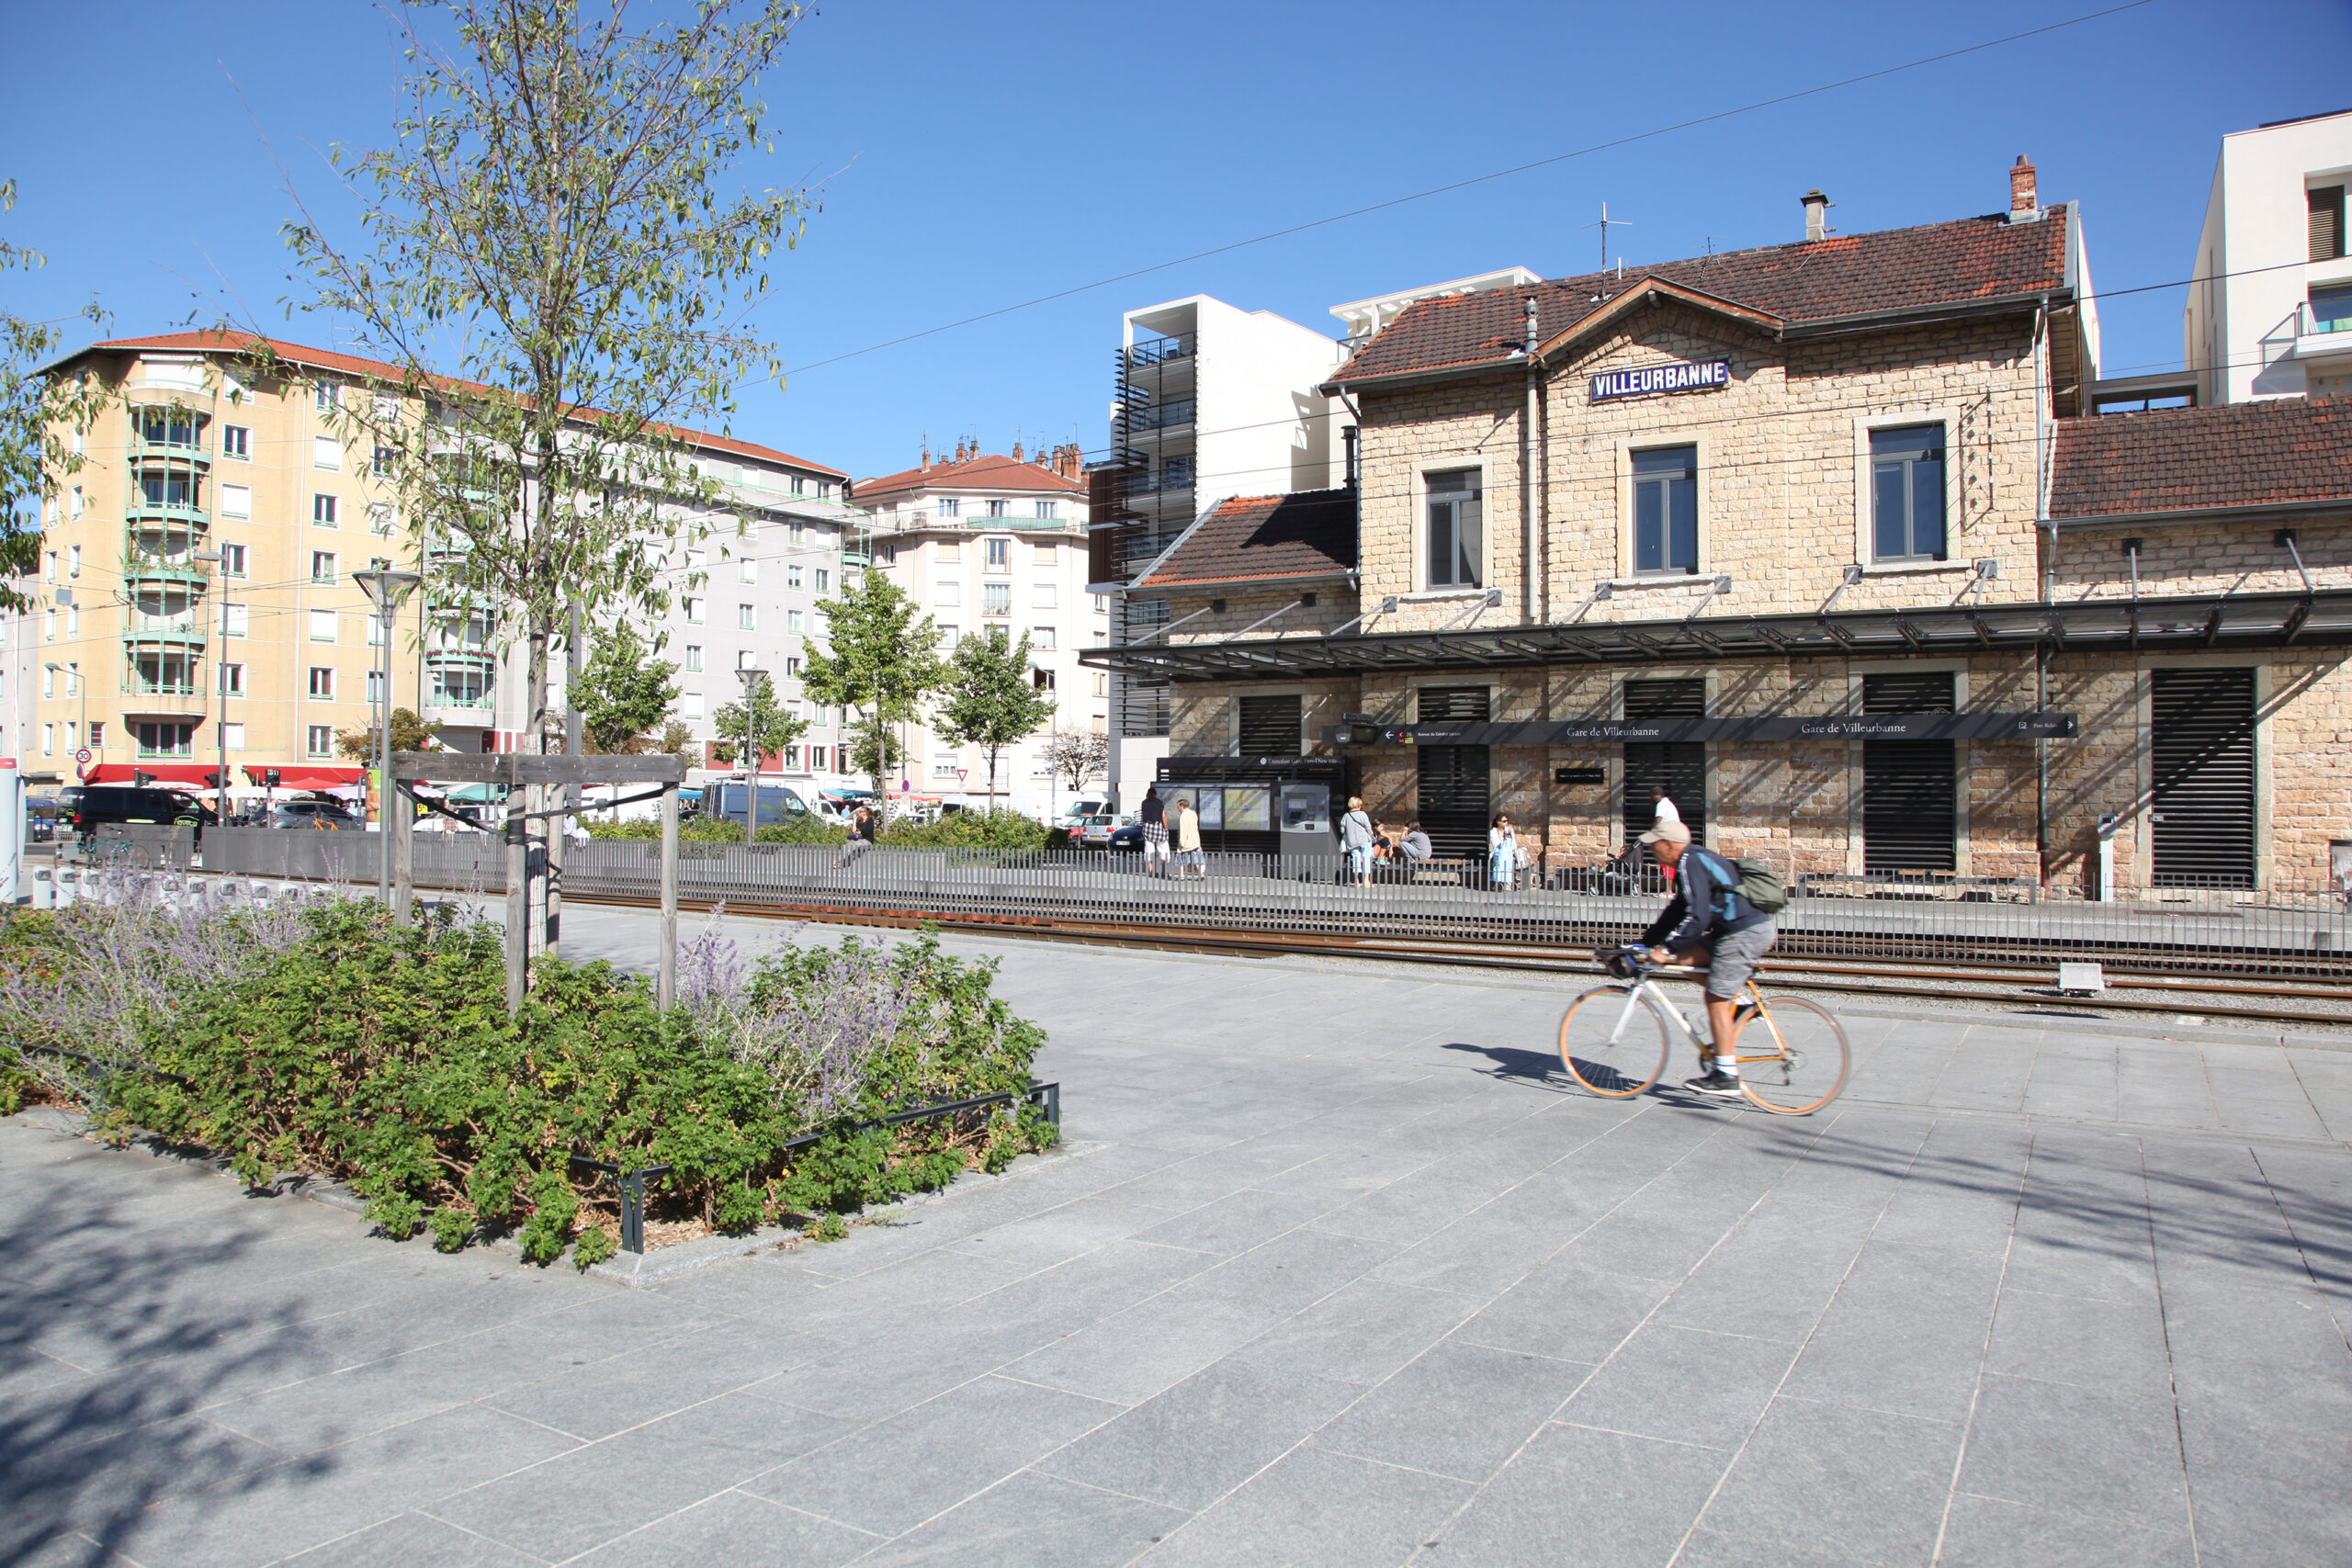 Balade urbaine - Le long de l'axe de Gare de Villeurbanne à Vaulx-en-Velin la Soie